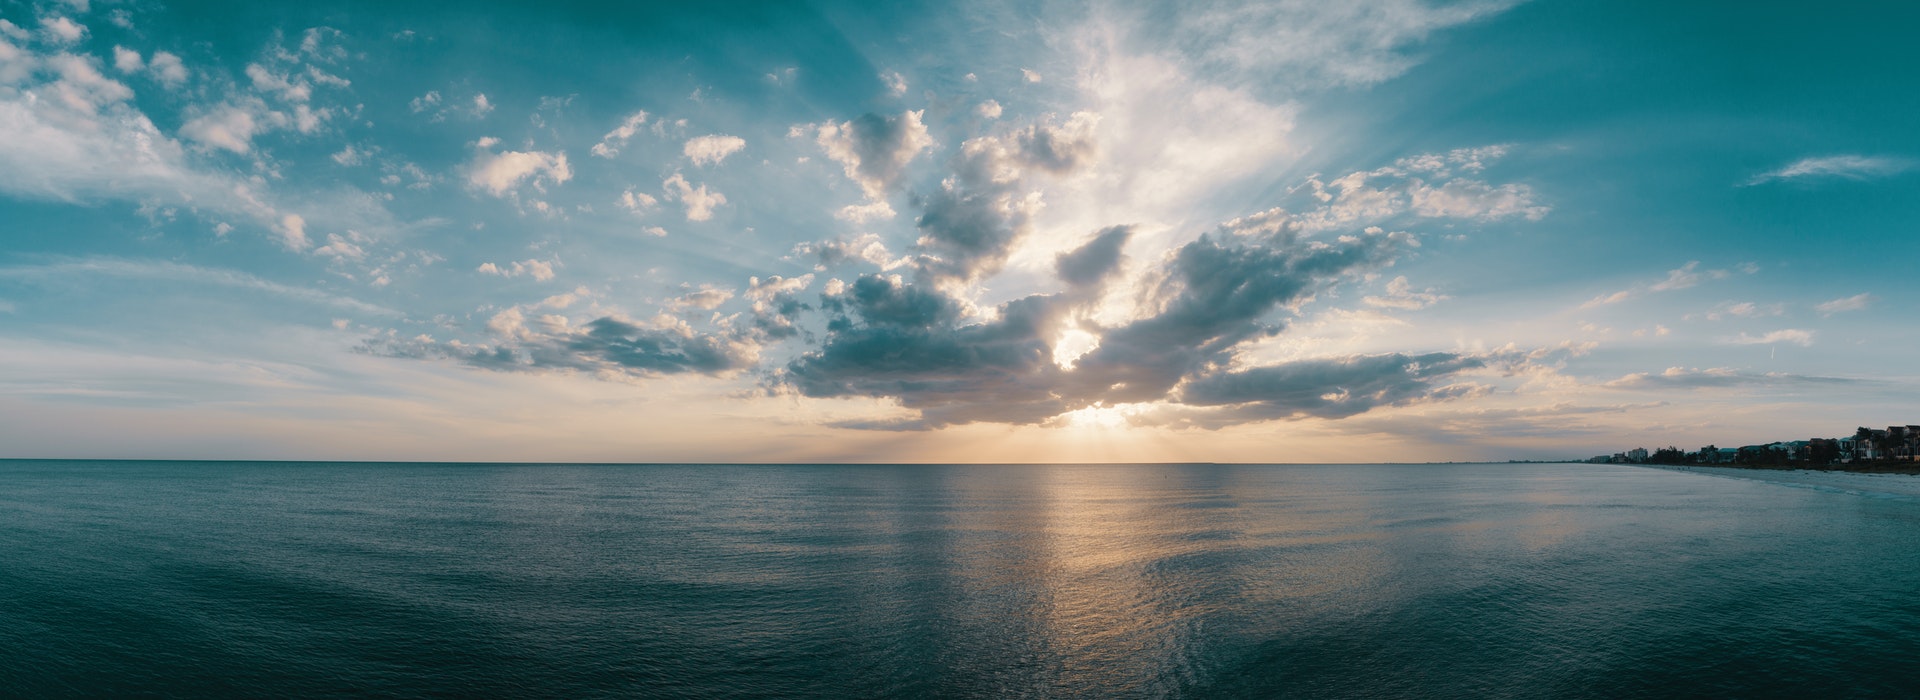 Nuages cotonneux au-dessus d’un océan bleu foncé au coucher du soleil.